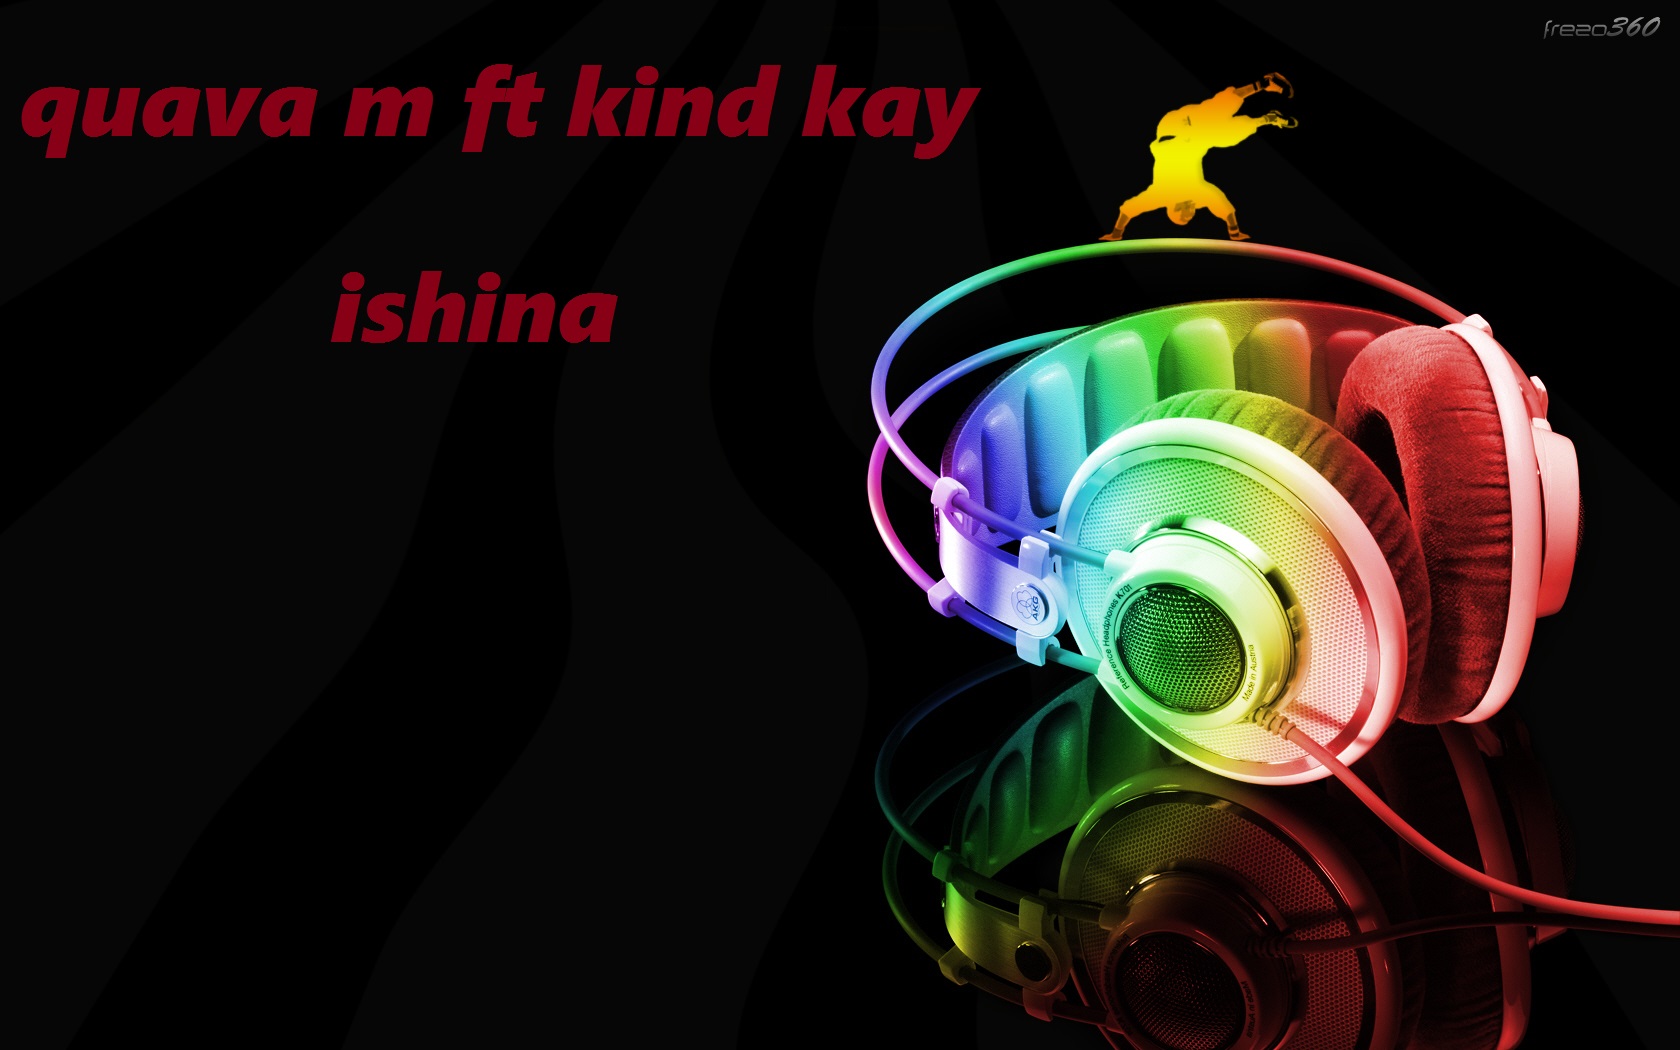 Ishina (Ft kind Kay)